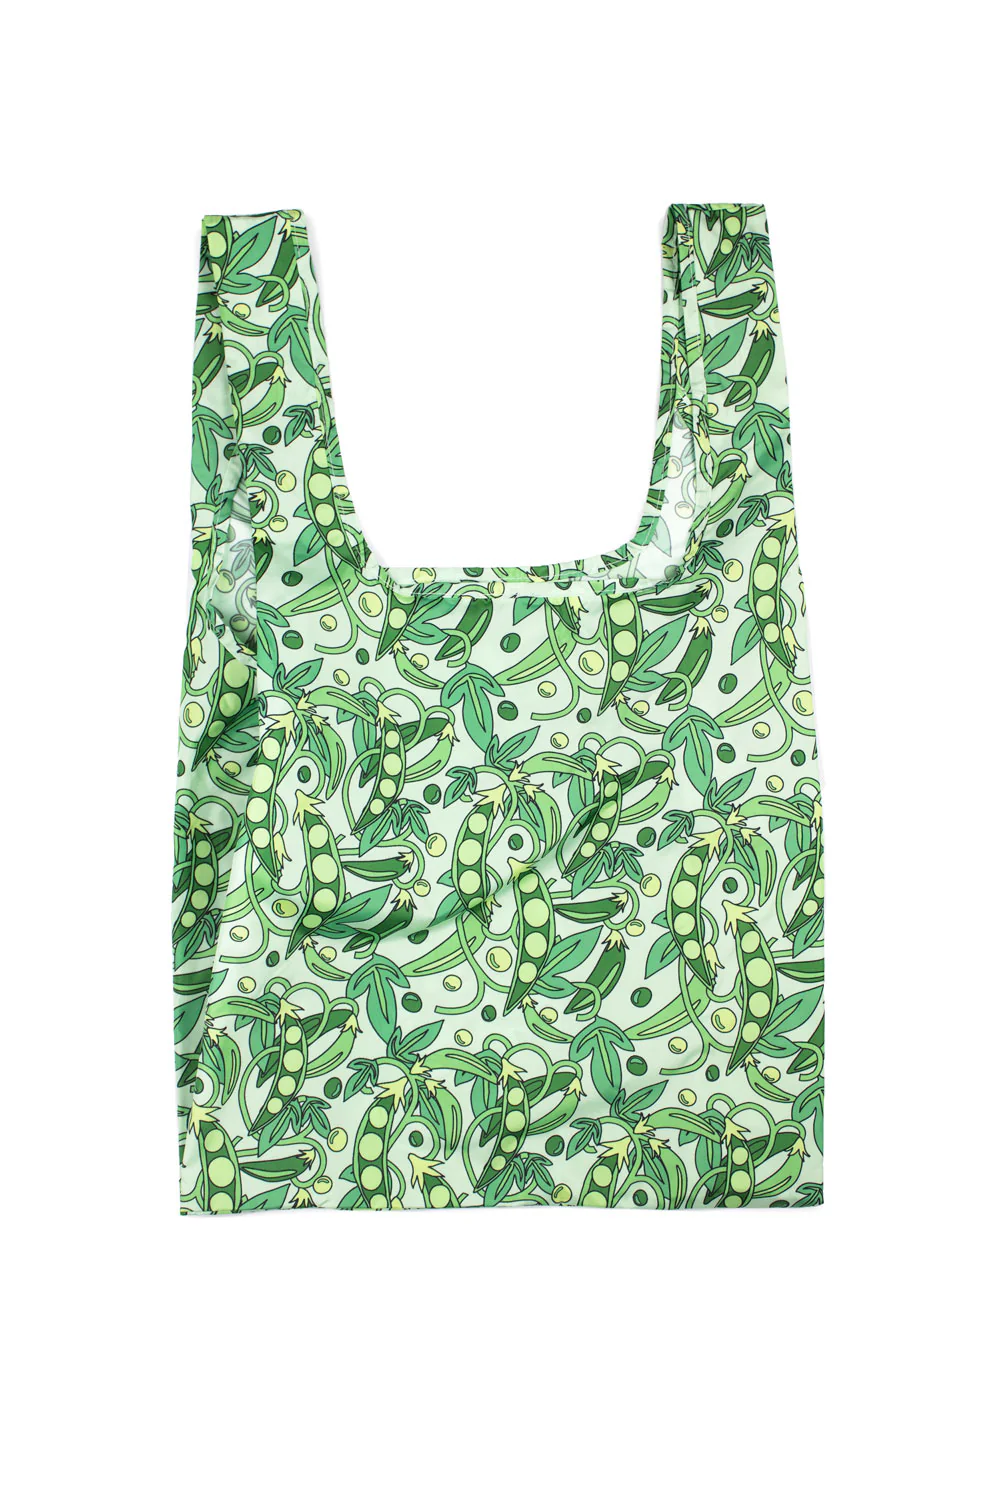 kind-bag-reusable-shopping-bag-peas